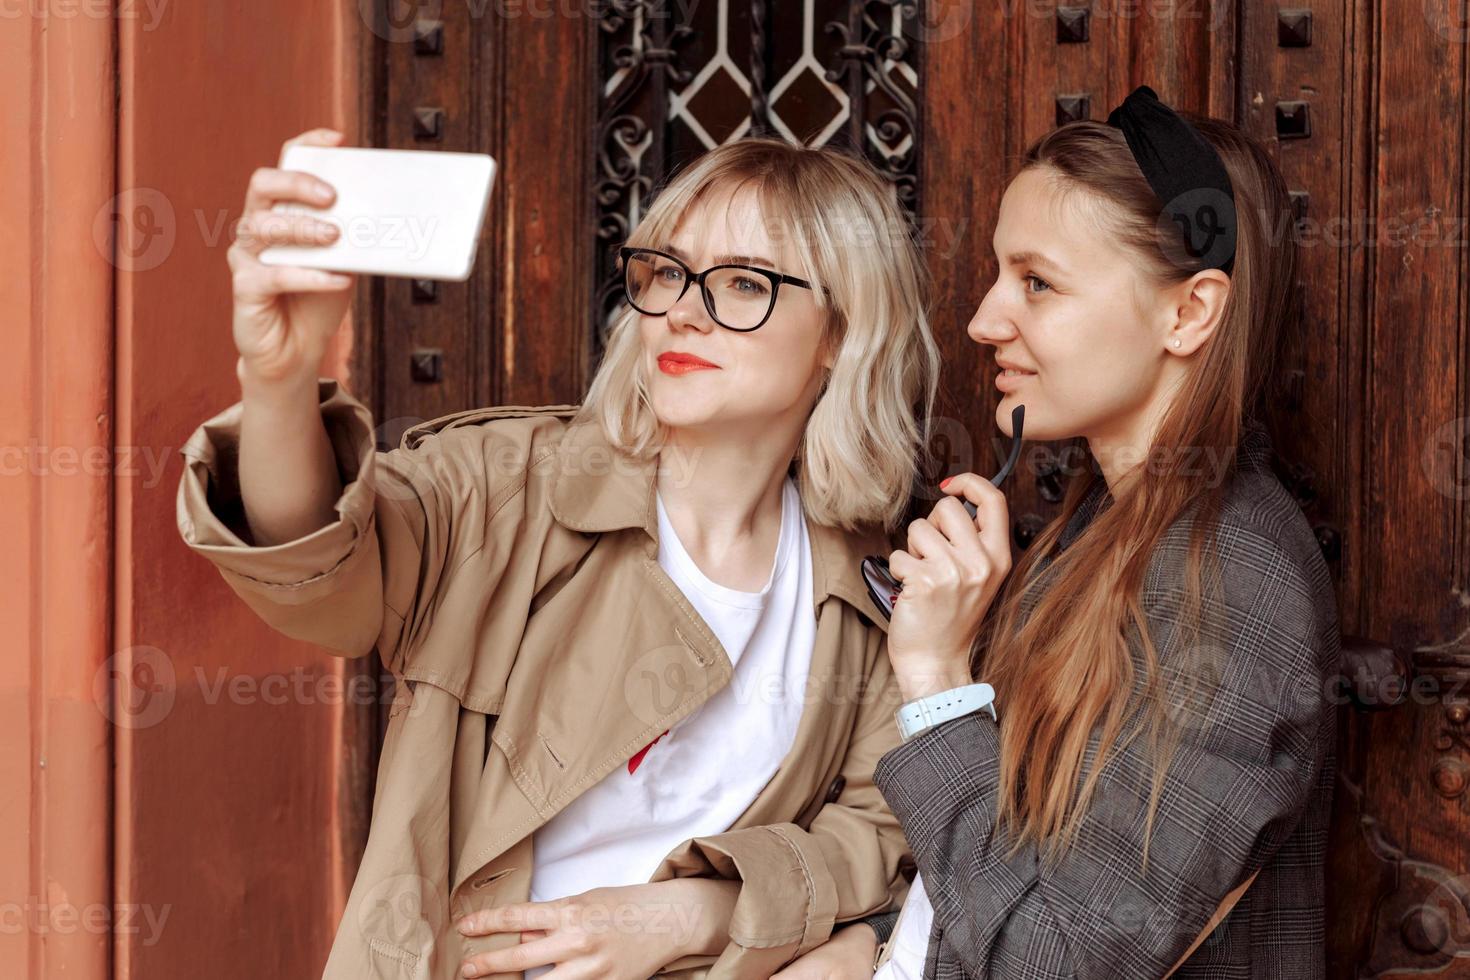 chicas jóvenes tomando selfies por teléfono. Fotos autofotos para redes sociales en teléfonos inteligentes en el fondo de la calle. cara de sorpresa, emociones.